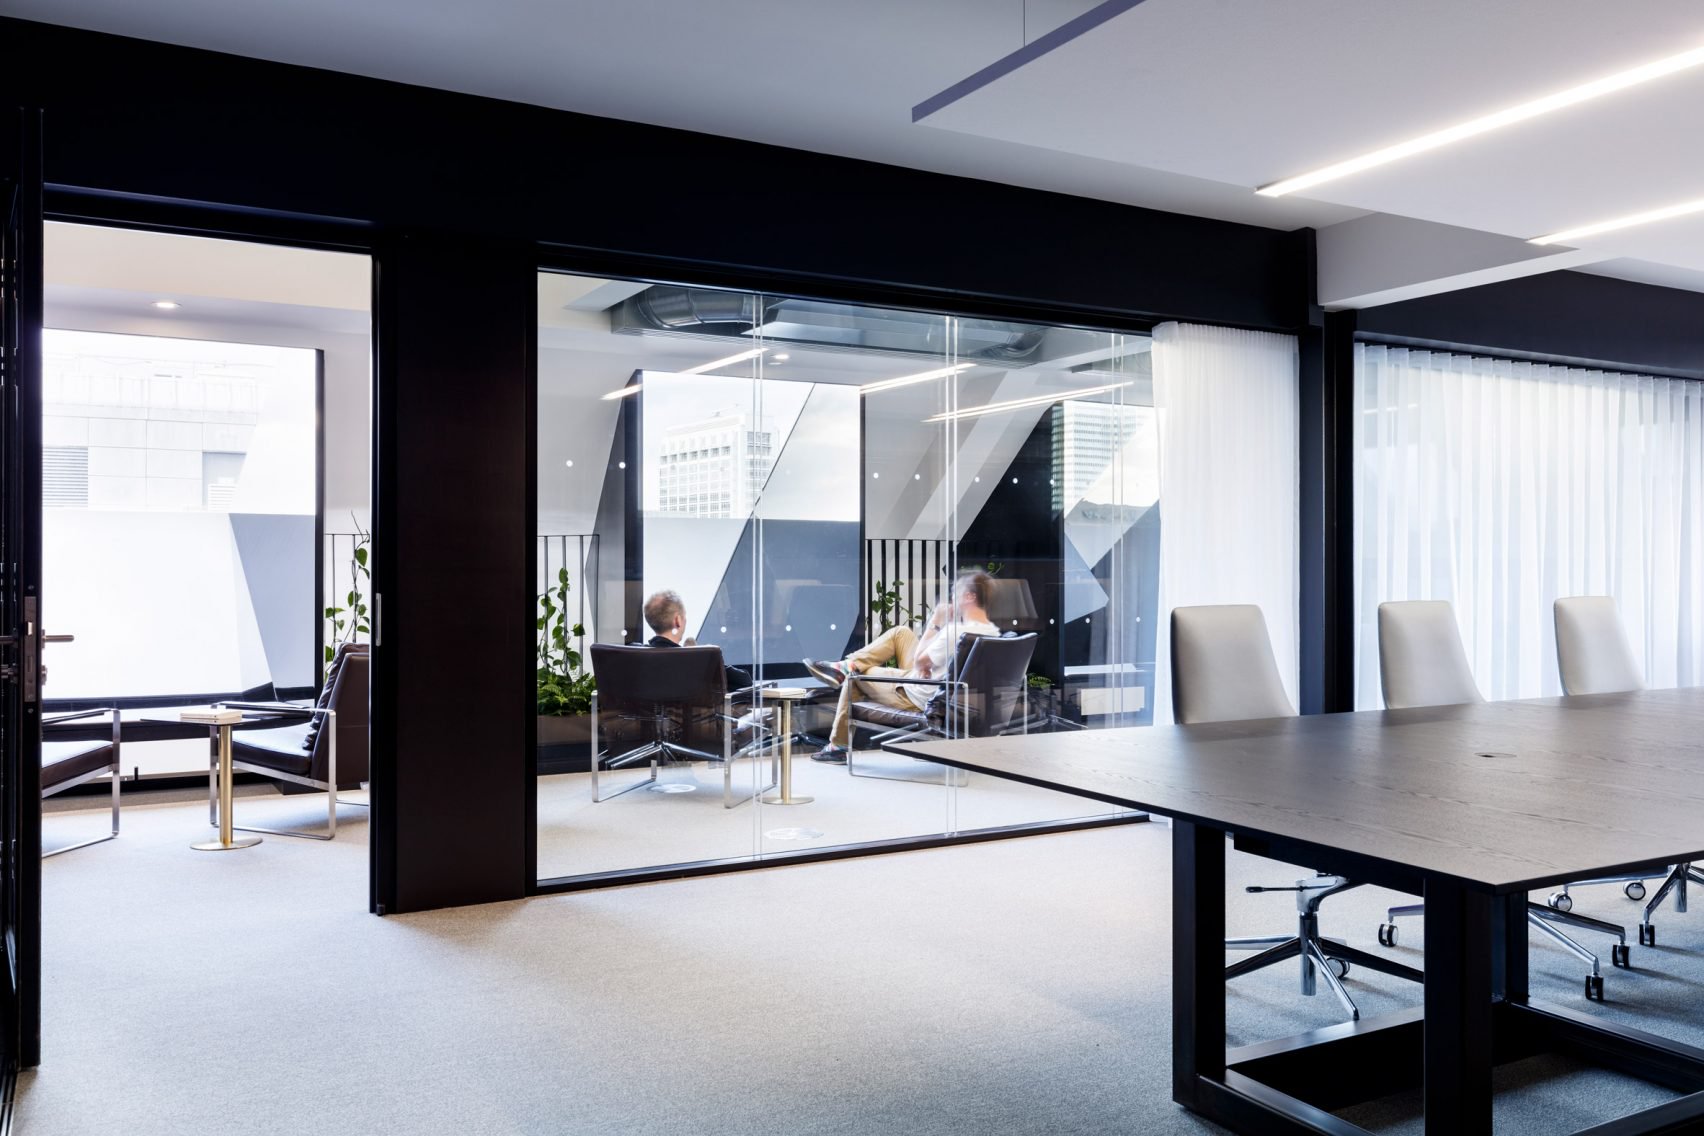 Dit is het moderne kantoor van van Slack, waar ook gekozen is voor moderne ledverlichting.